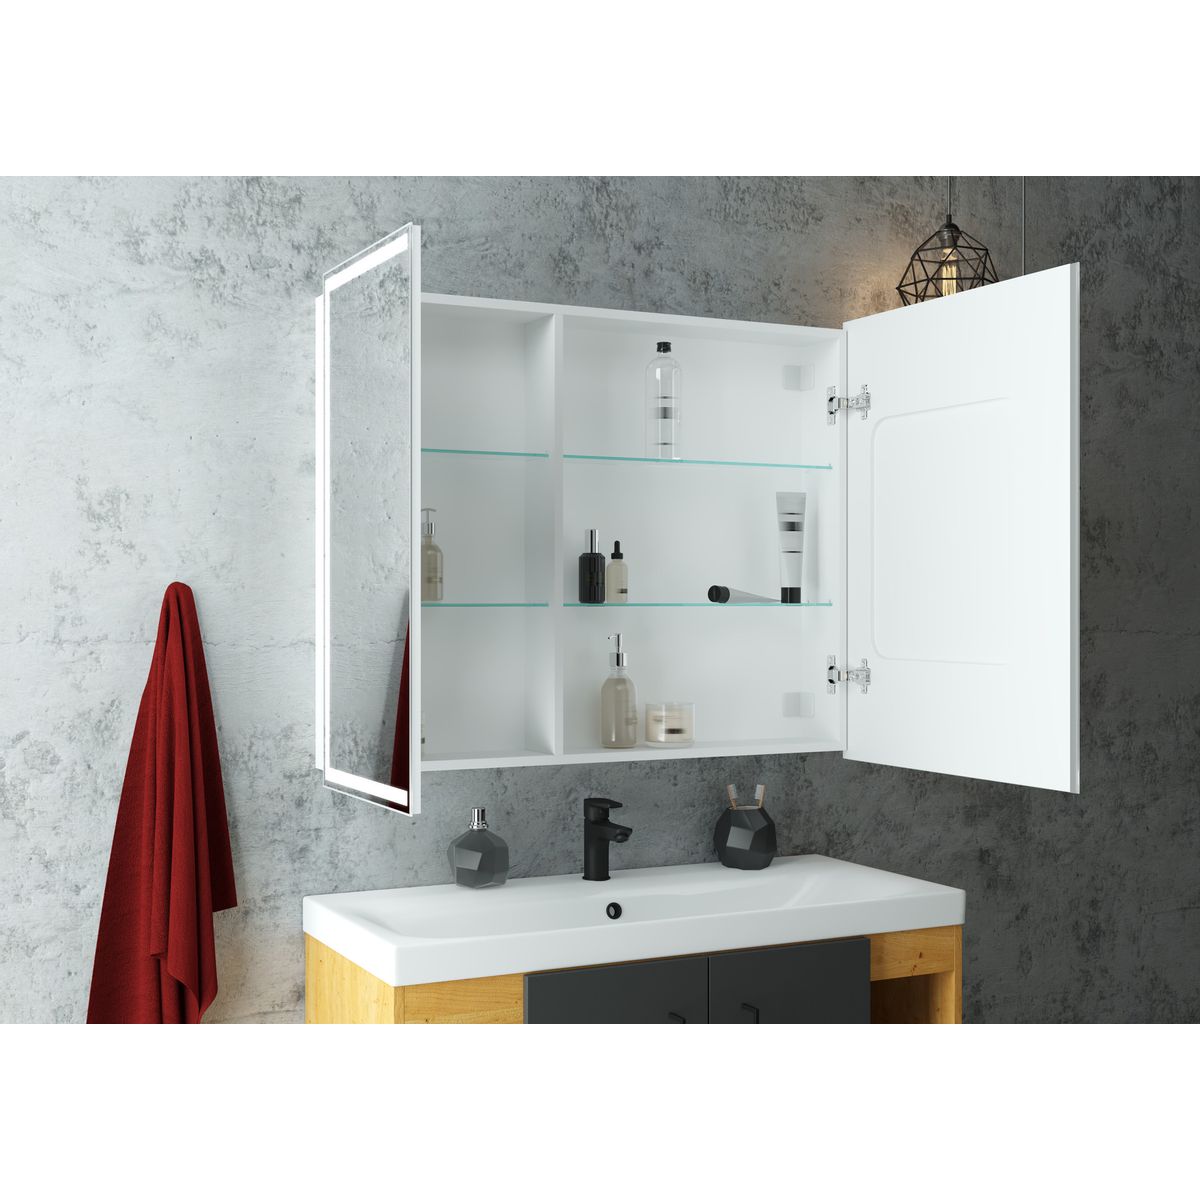 Шкаф зеркальный подвесной look с подсветкой 100х80 см цвет белый